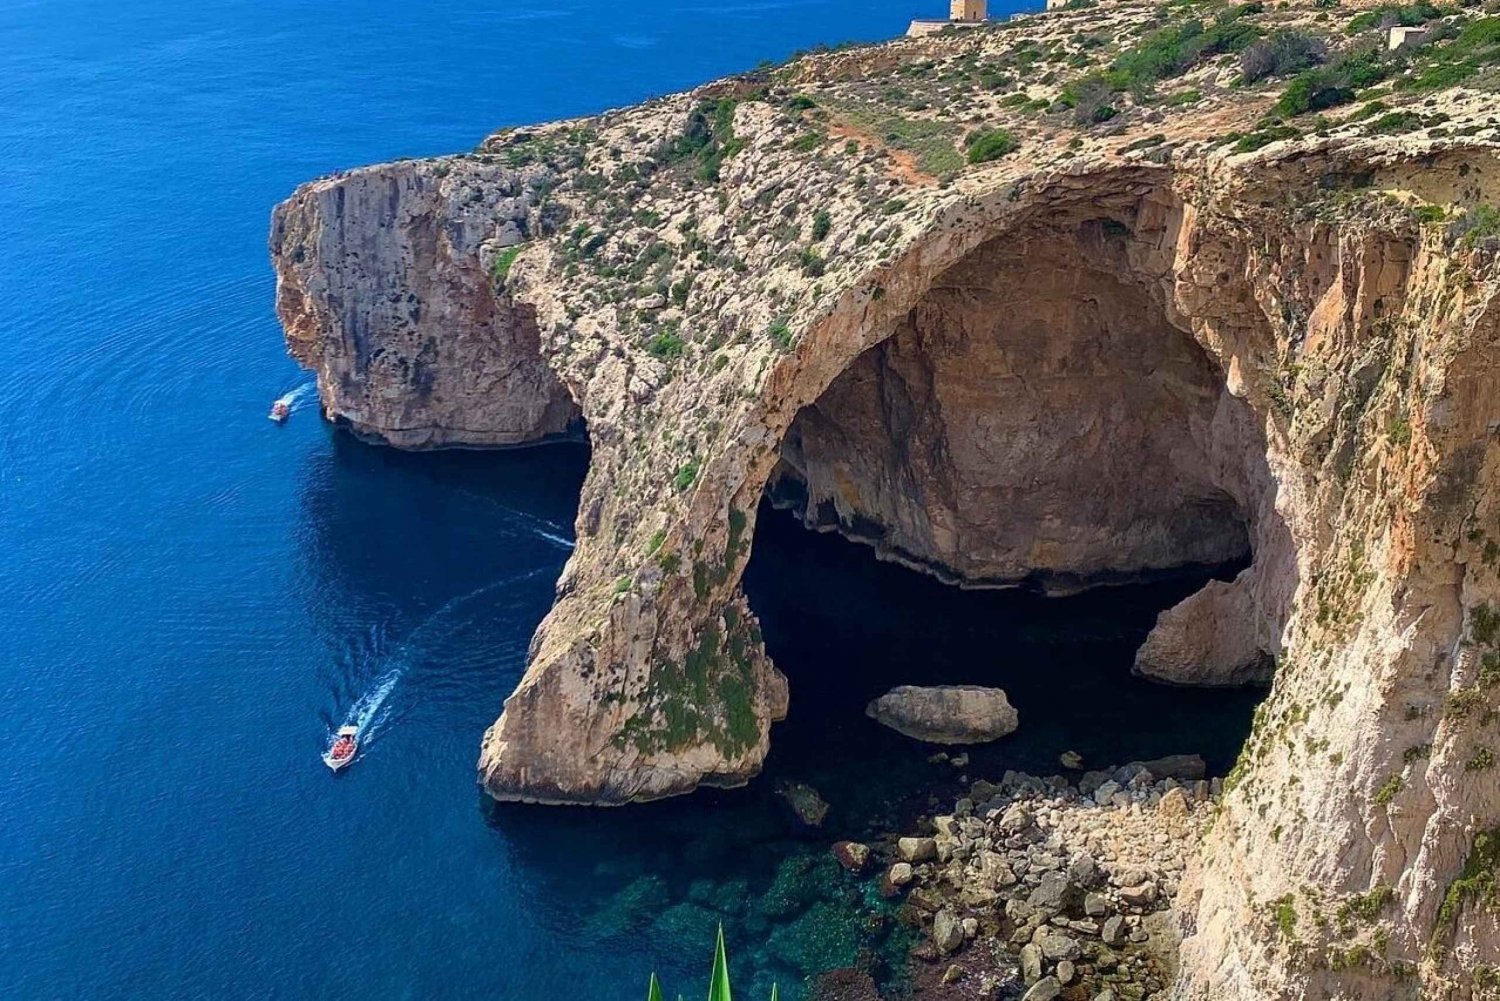 Avventure a Malta: emozioni, storia e bellezza naturale